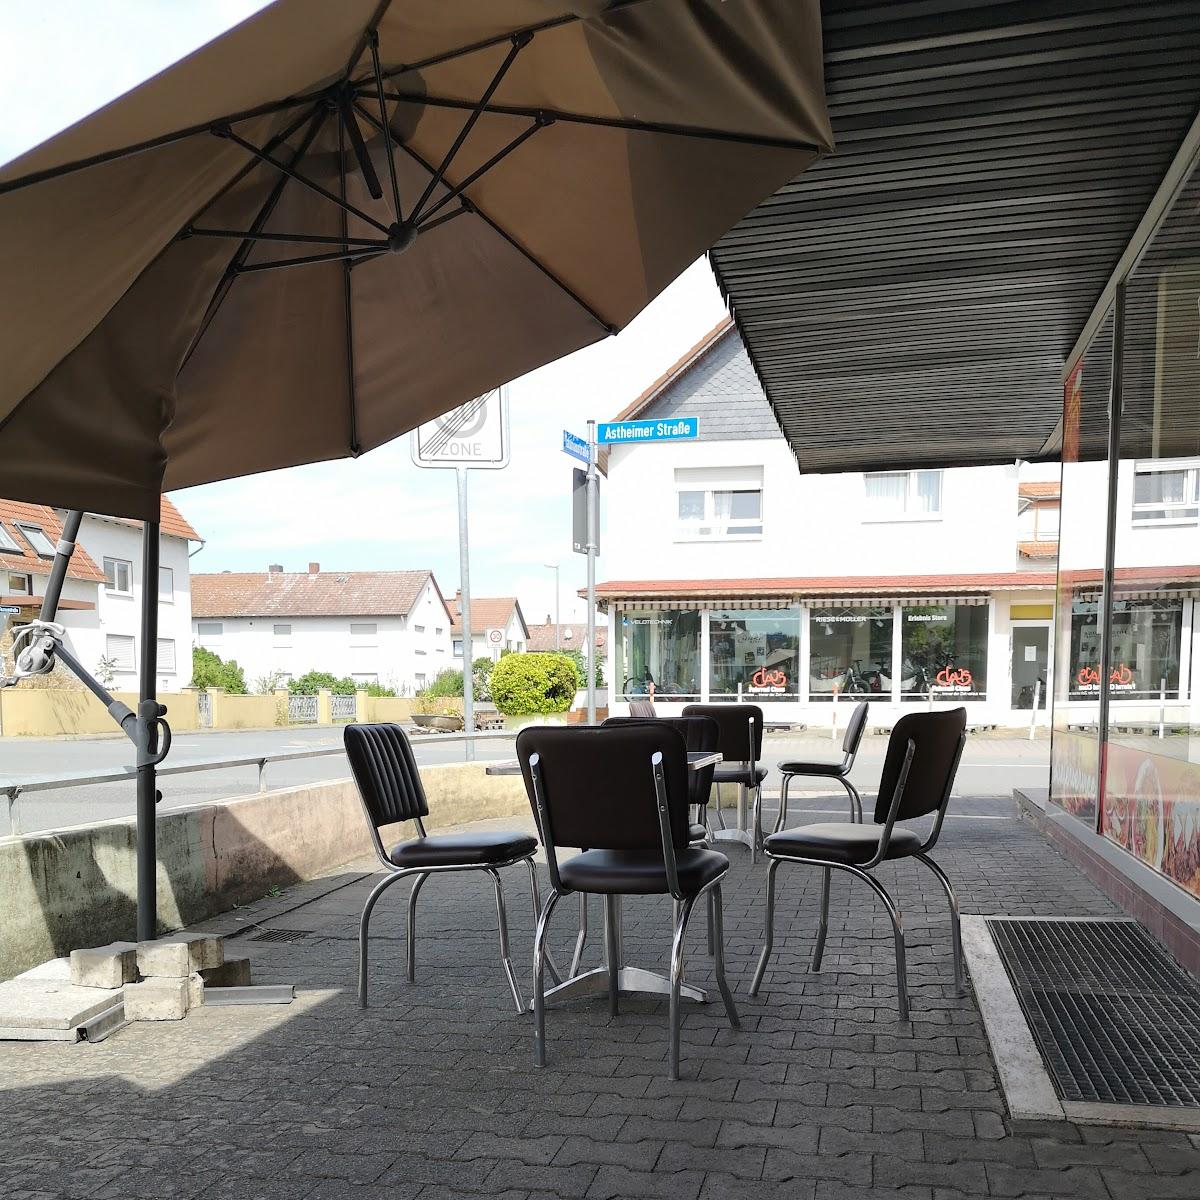 Restaurant "Elbistan Döner und Pizza Haus" in Trebur